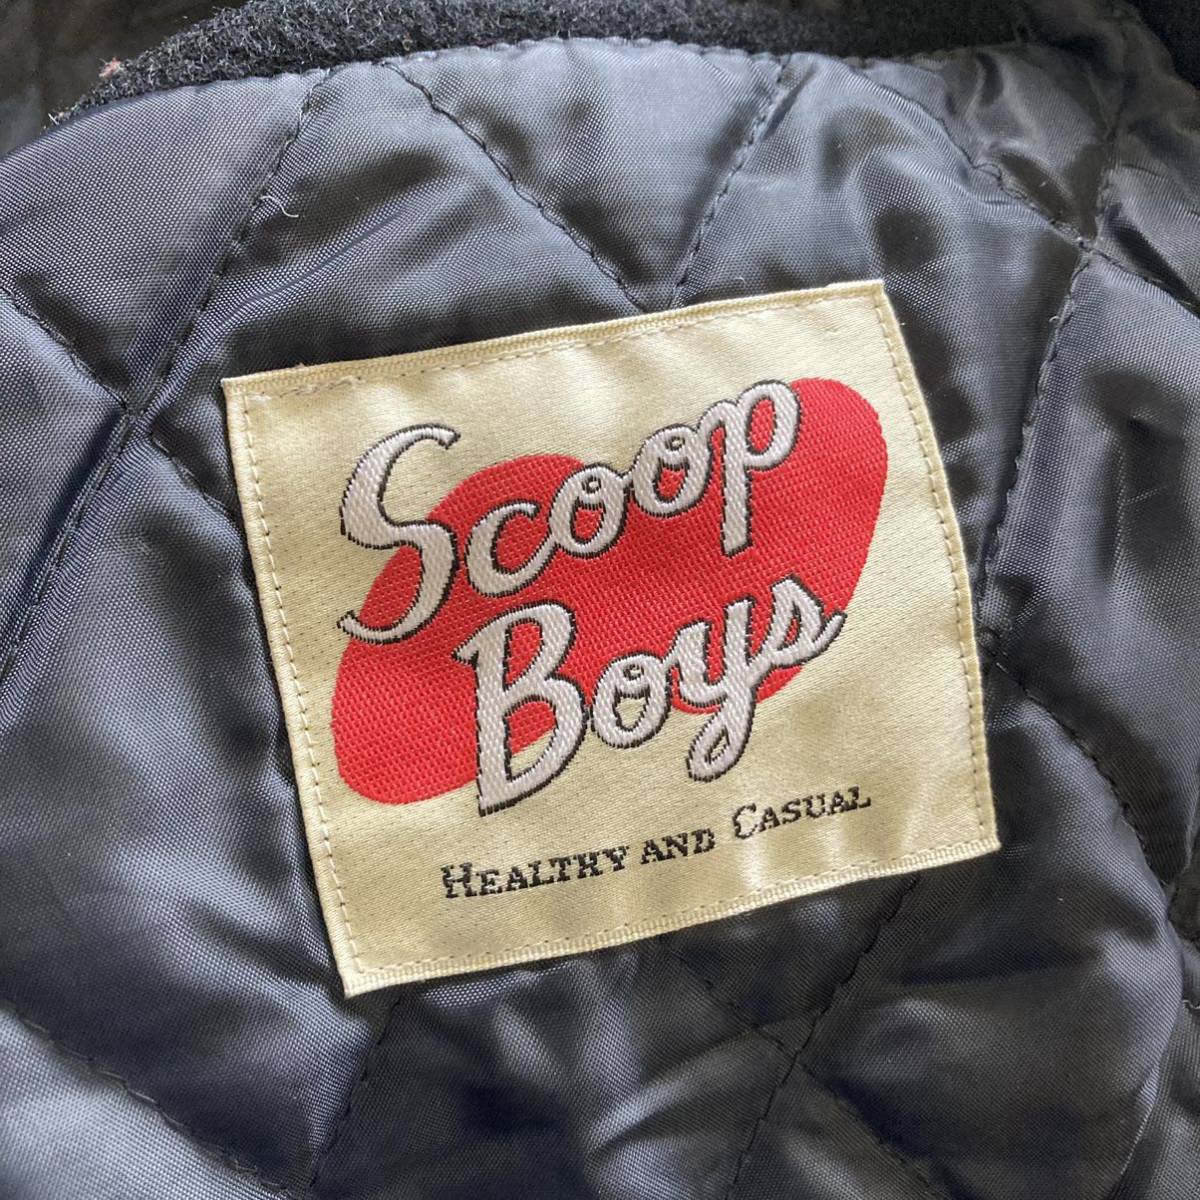 SCOOP BOYS スクープマン スクープボーイズ 袖革 スタジャン ジャケット FREE_画像5